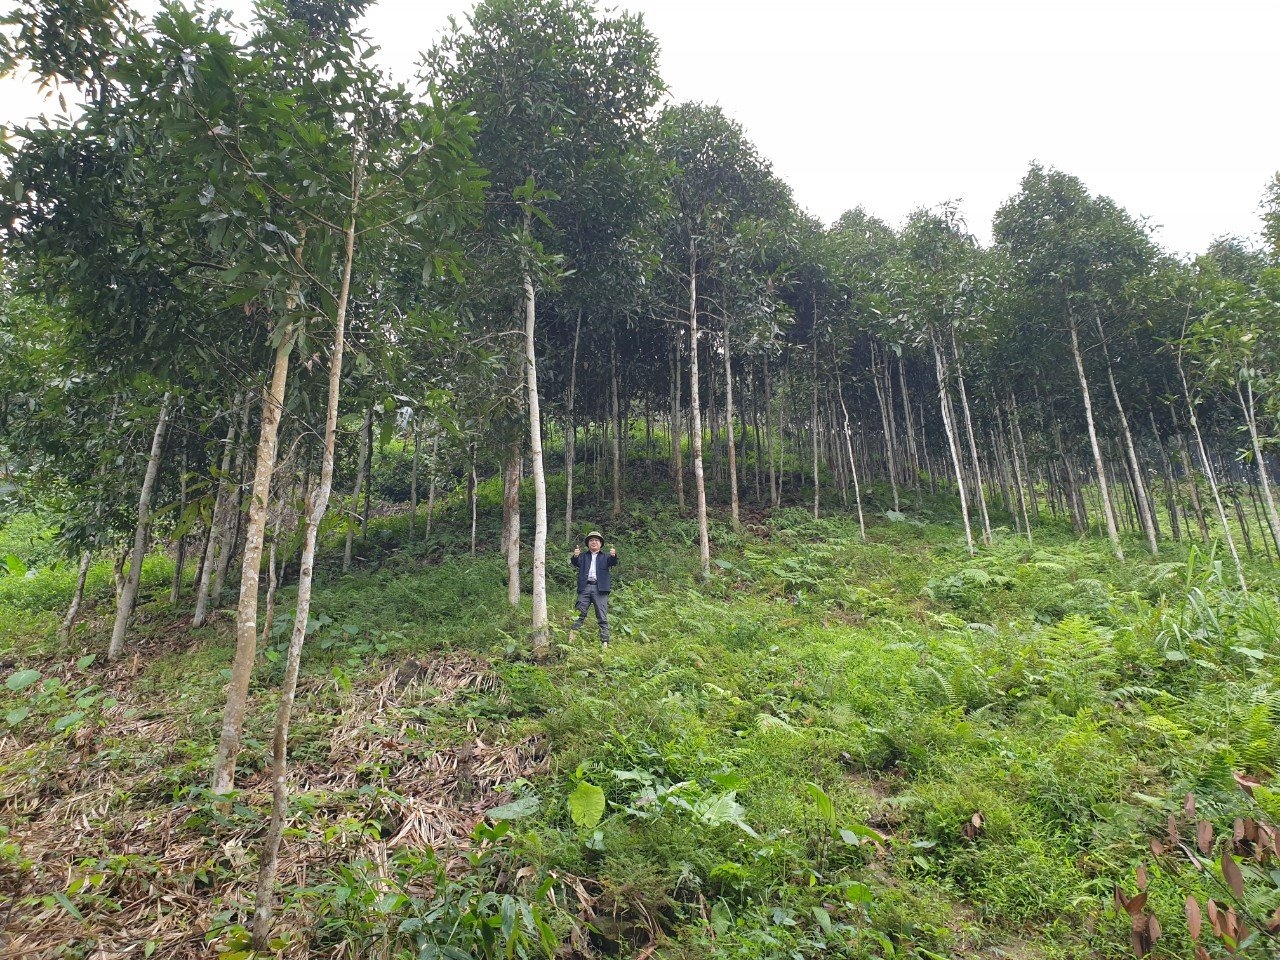 Liên kết trồng rừng kinh tế đem lại thu nhập khá cho người dân huyện Văn Yên, Yên Bái 